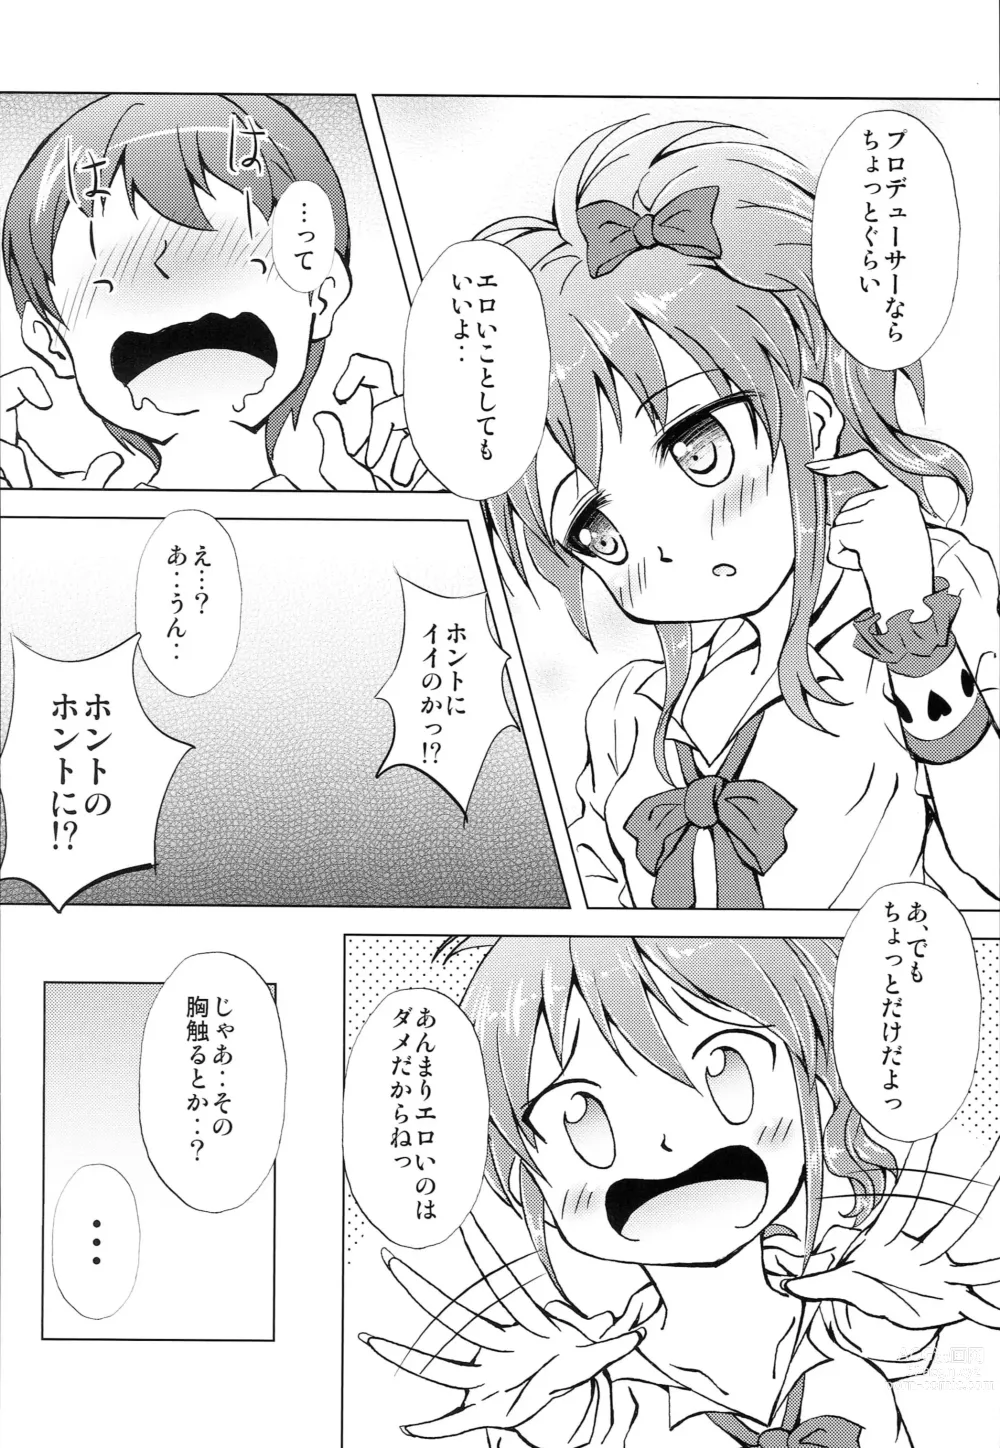 Page 7 of doujinshi Mika-chan Maji Pinky Heart Zenkai